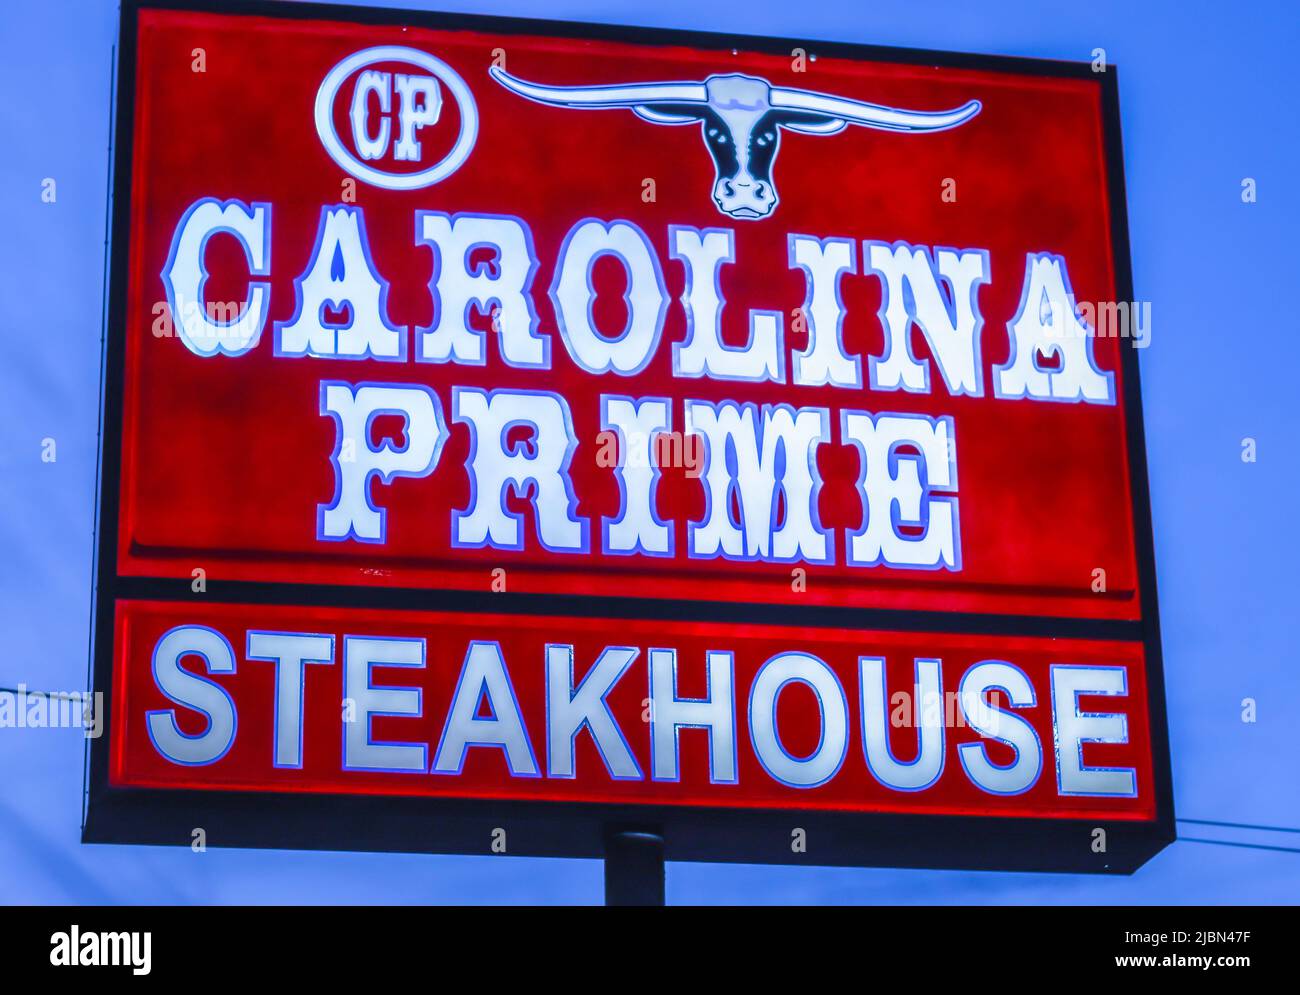 Carolina Prime Steakhouse, freistehend beleuchtete Straßenwerbung in weißen Buchstaben auf rotem Hintergrund vor blauem Himmel. Stockfoto